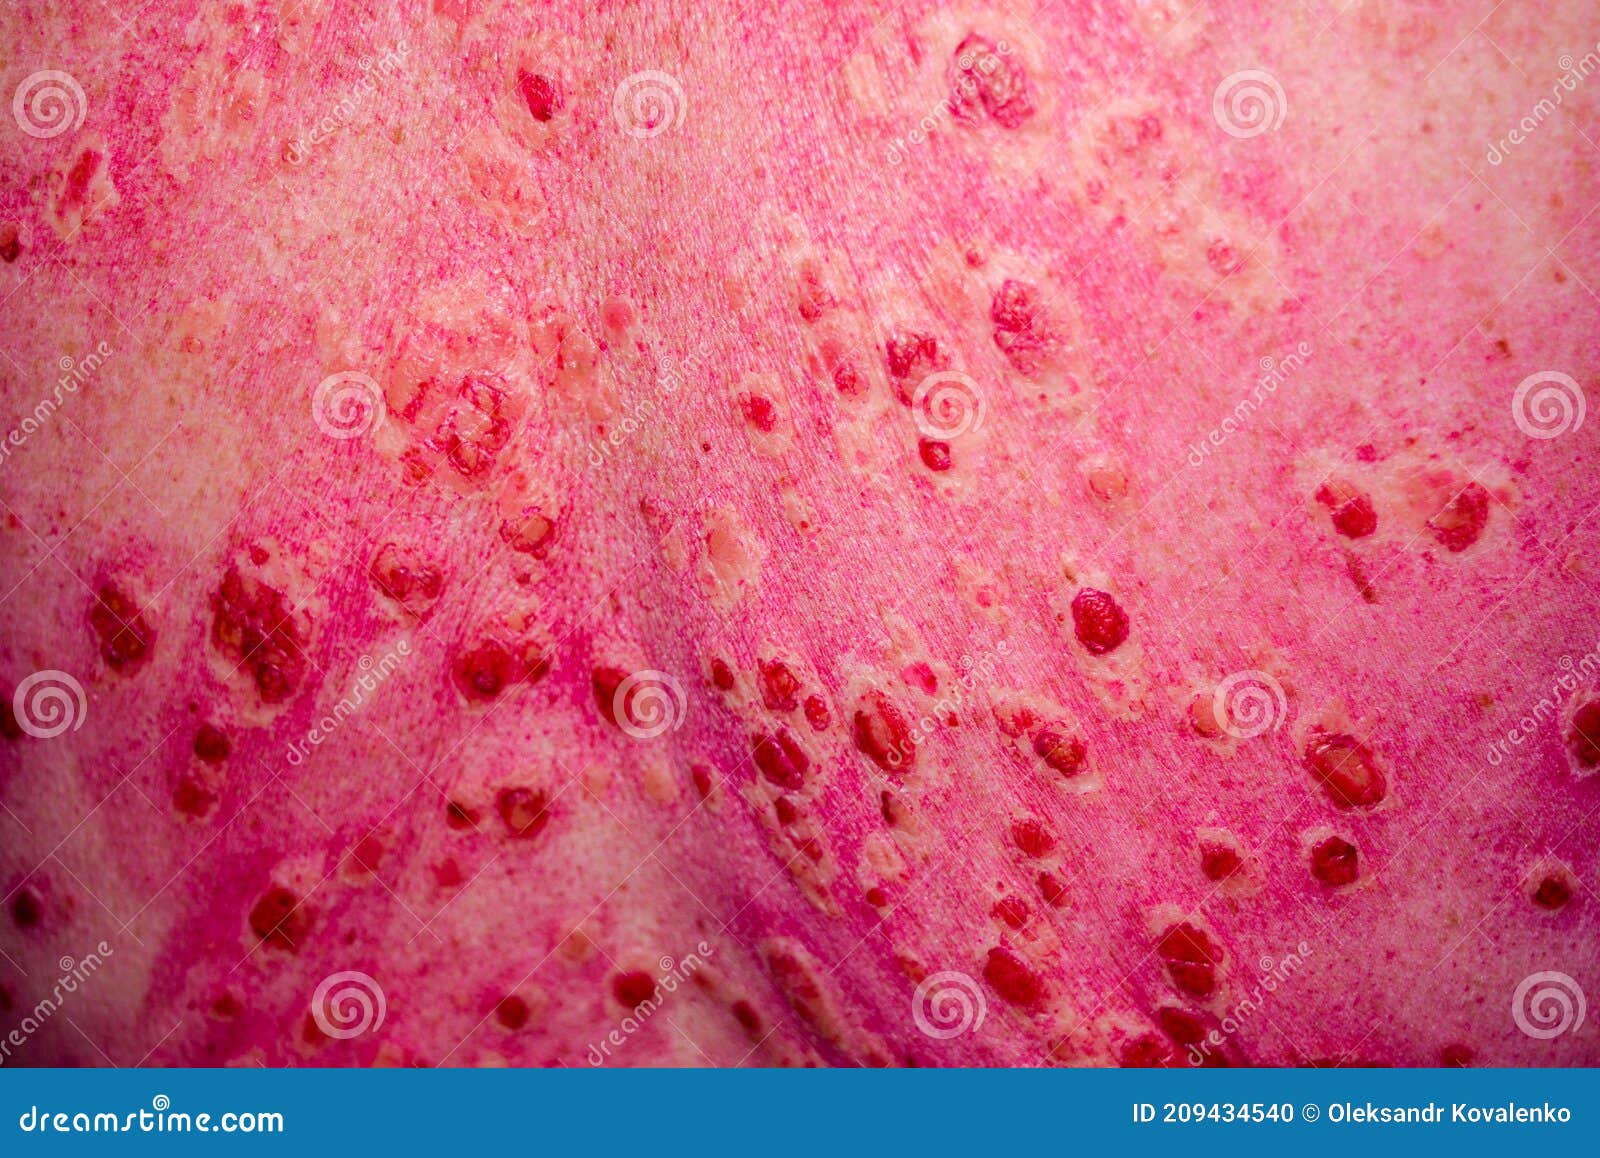 Discoid Rash Of System Lupus Eruthematosus Stock Photo Image Of